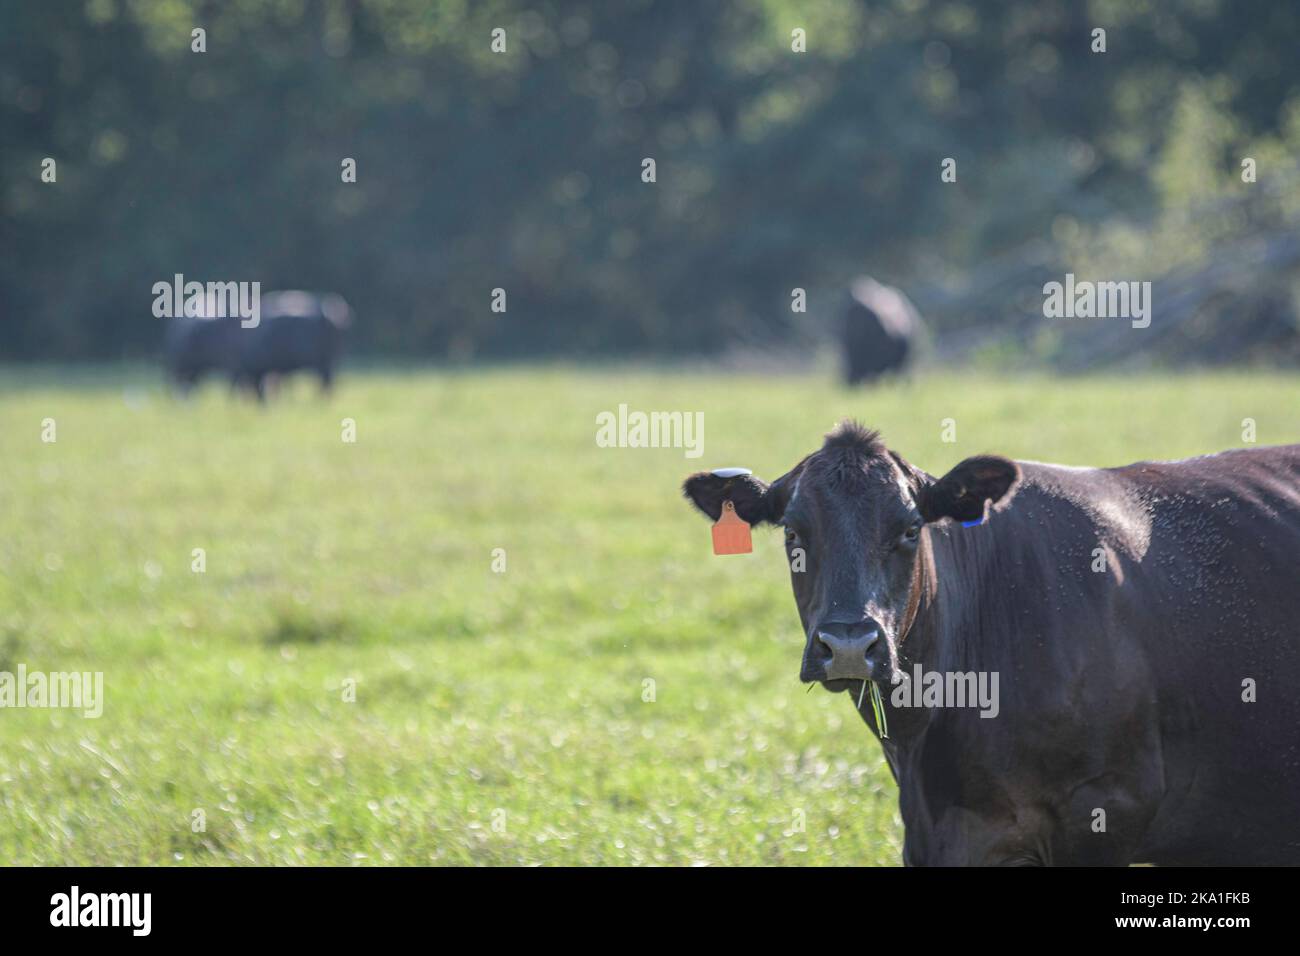 La vacca di manzo nera di Angus crossbred in primo piano con bovini fuori fuoco sullo sfondo e lo spazio negativo. Foto Stock